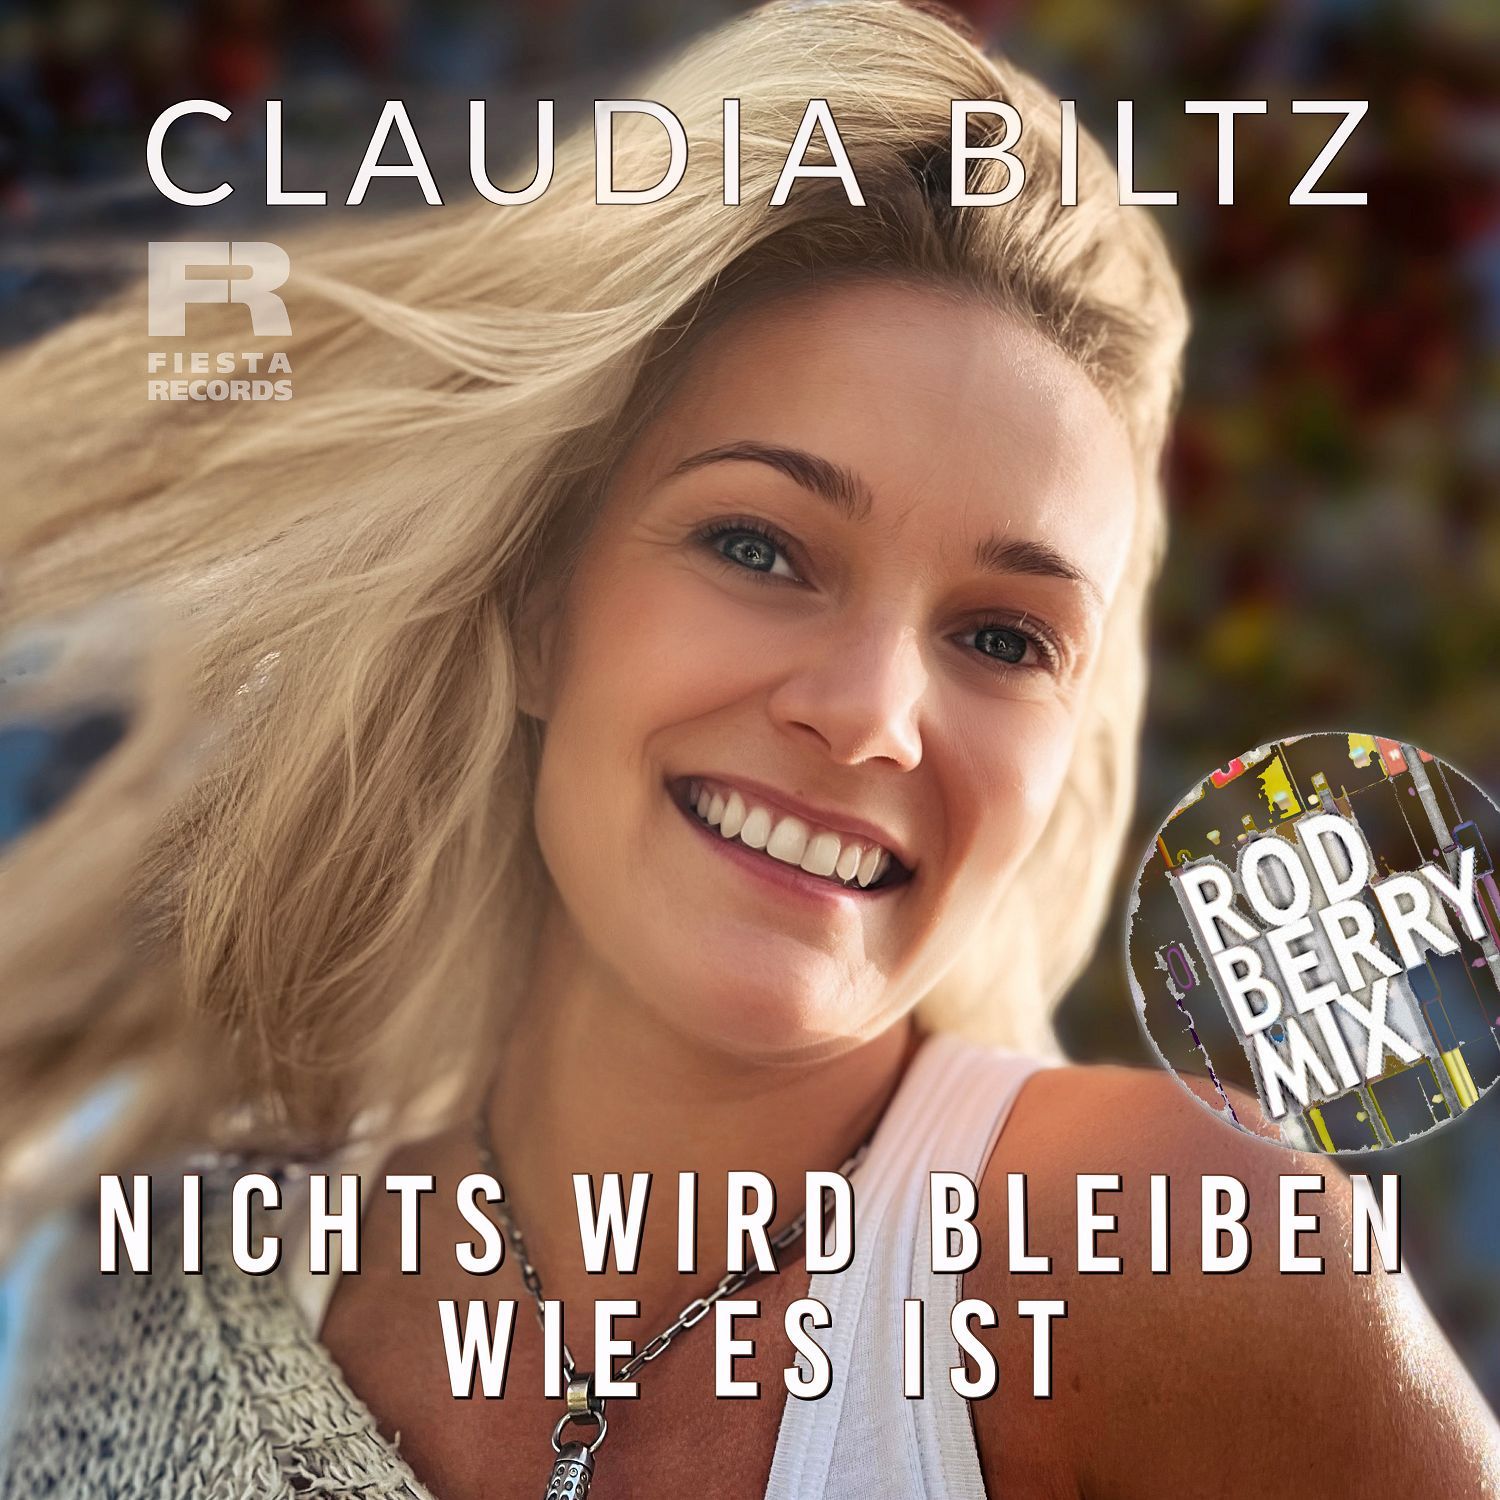 Claudia Biltz - Nichts wird bleiben wie es ist (Rod Berry Mix)